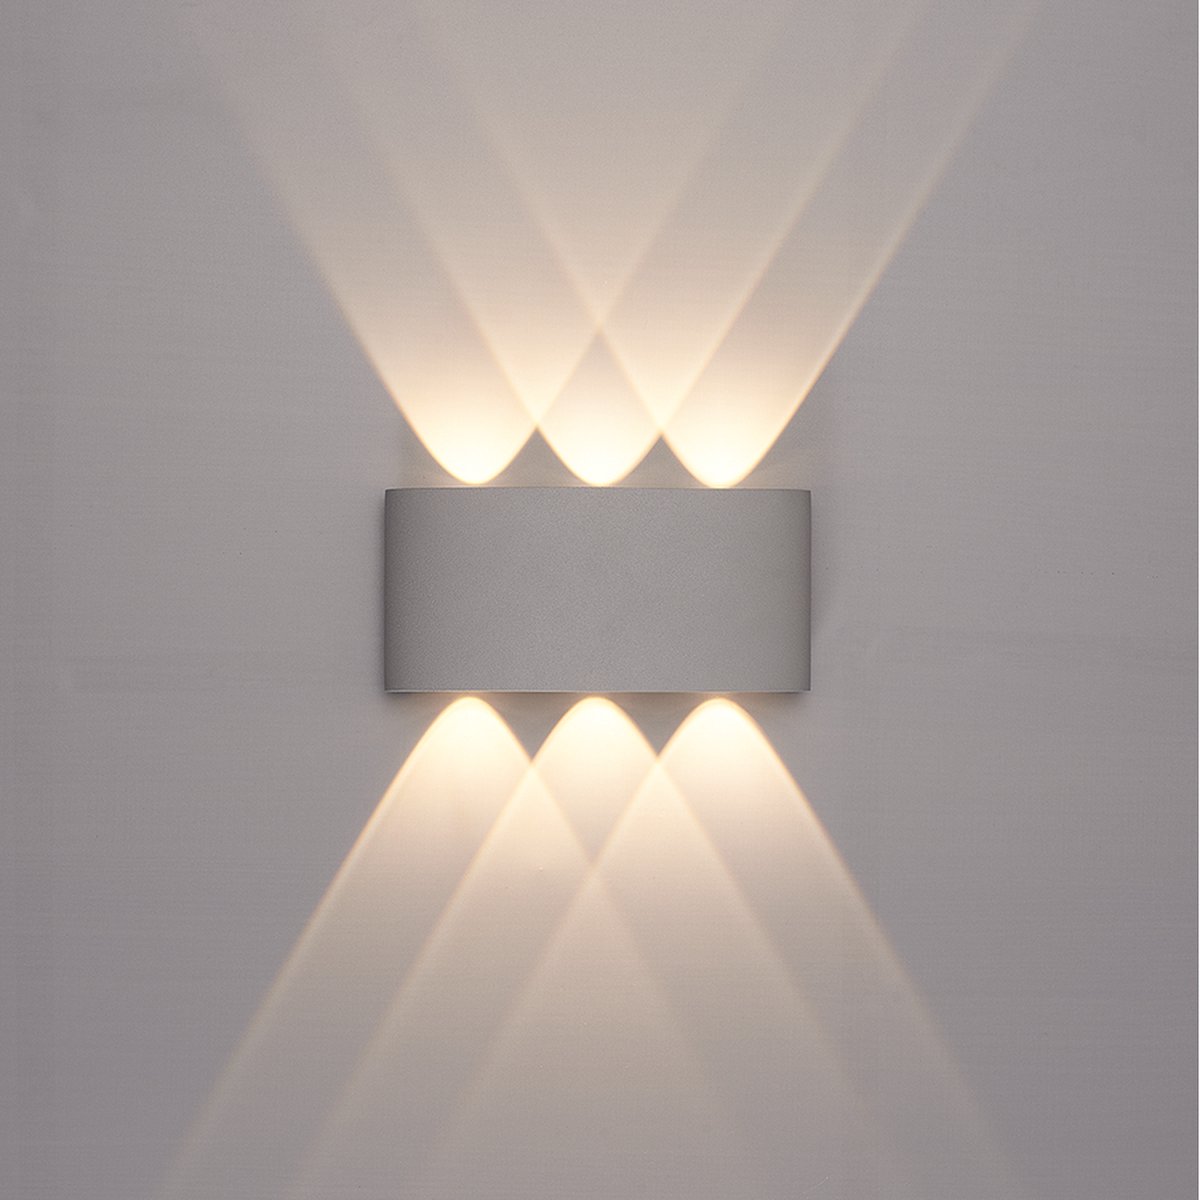 Gitex - Led Wandlamp 6W IP65 - Wit - Waterdicht - Warm White Licht - Buiten/Binnen - Moderne Nordic Stijl